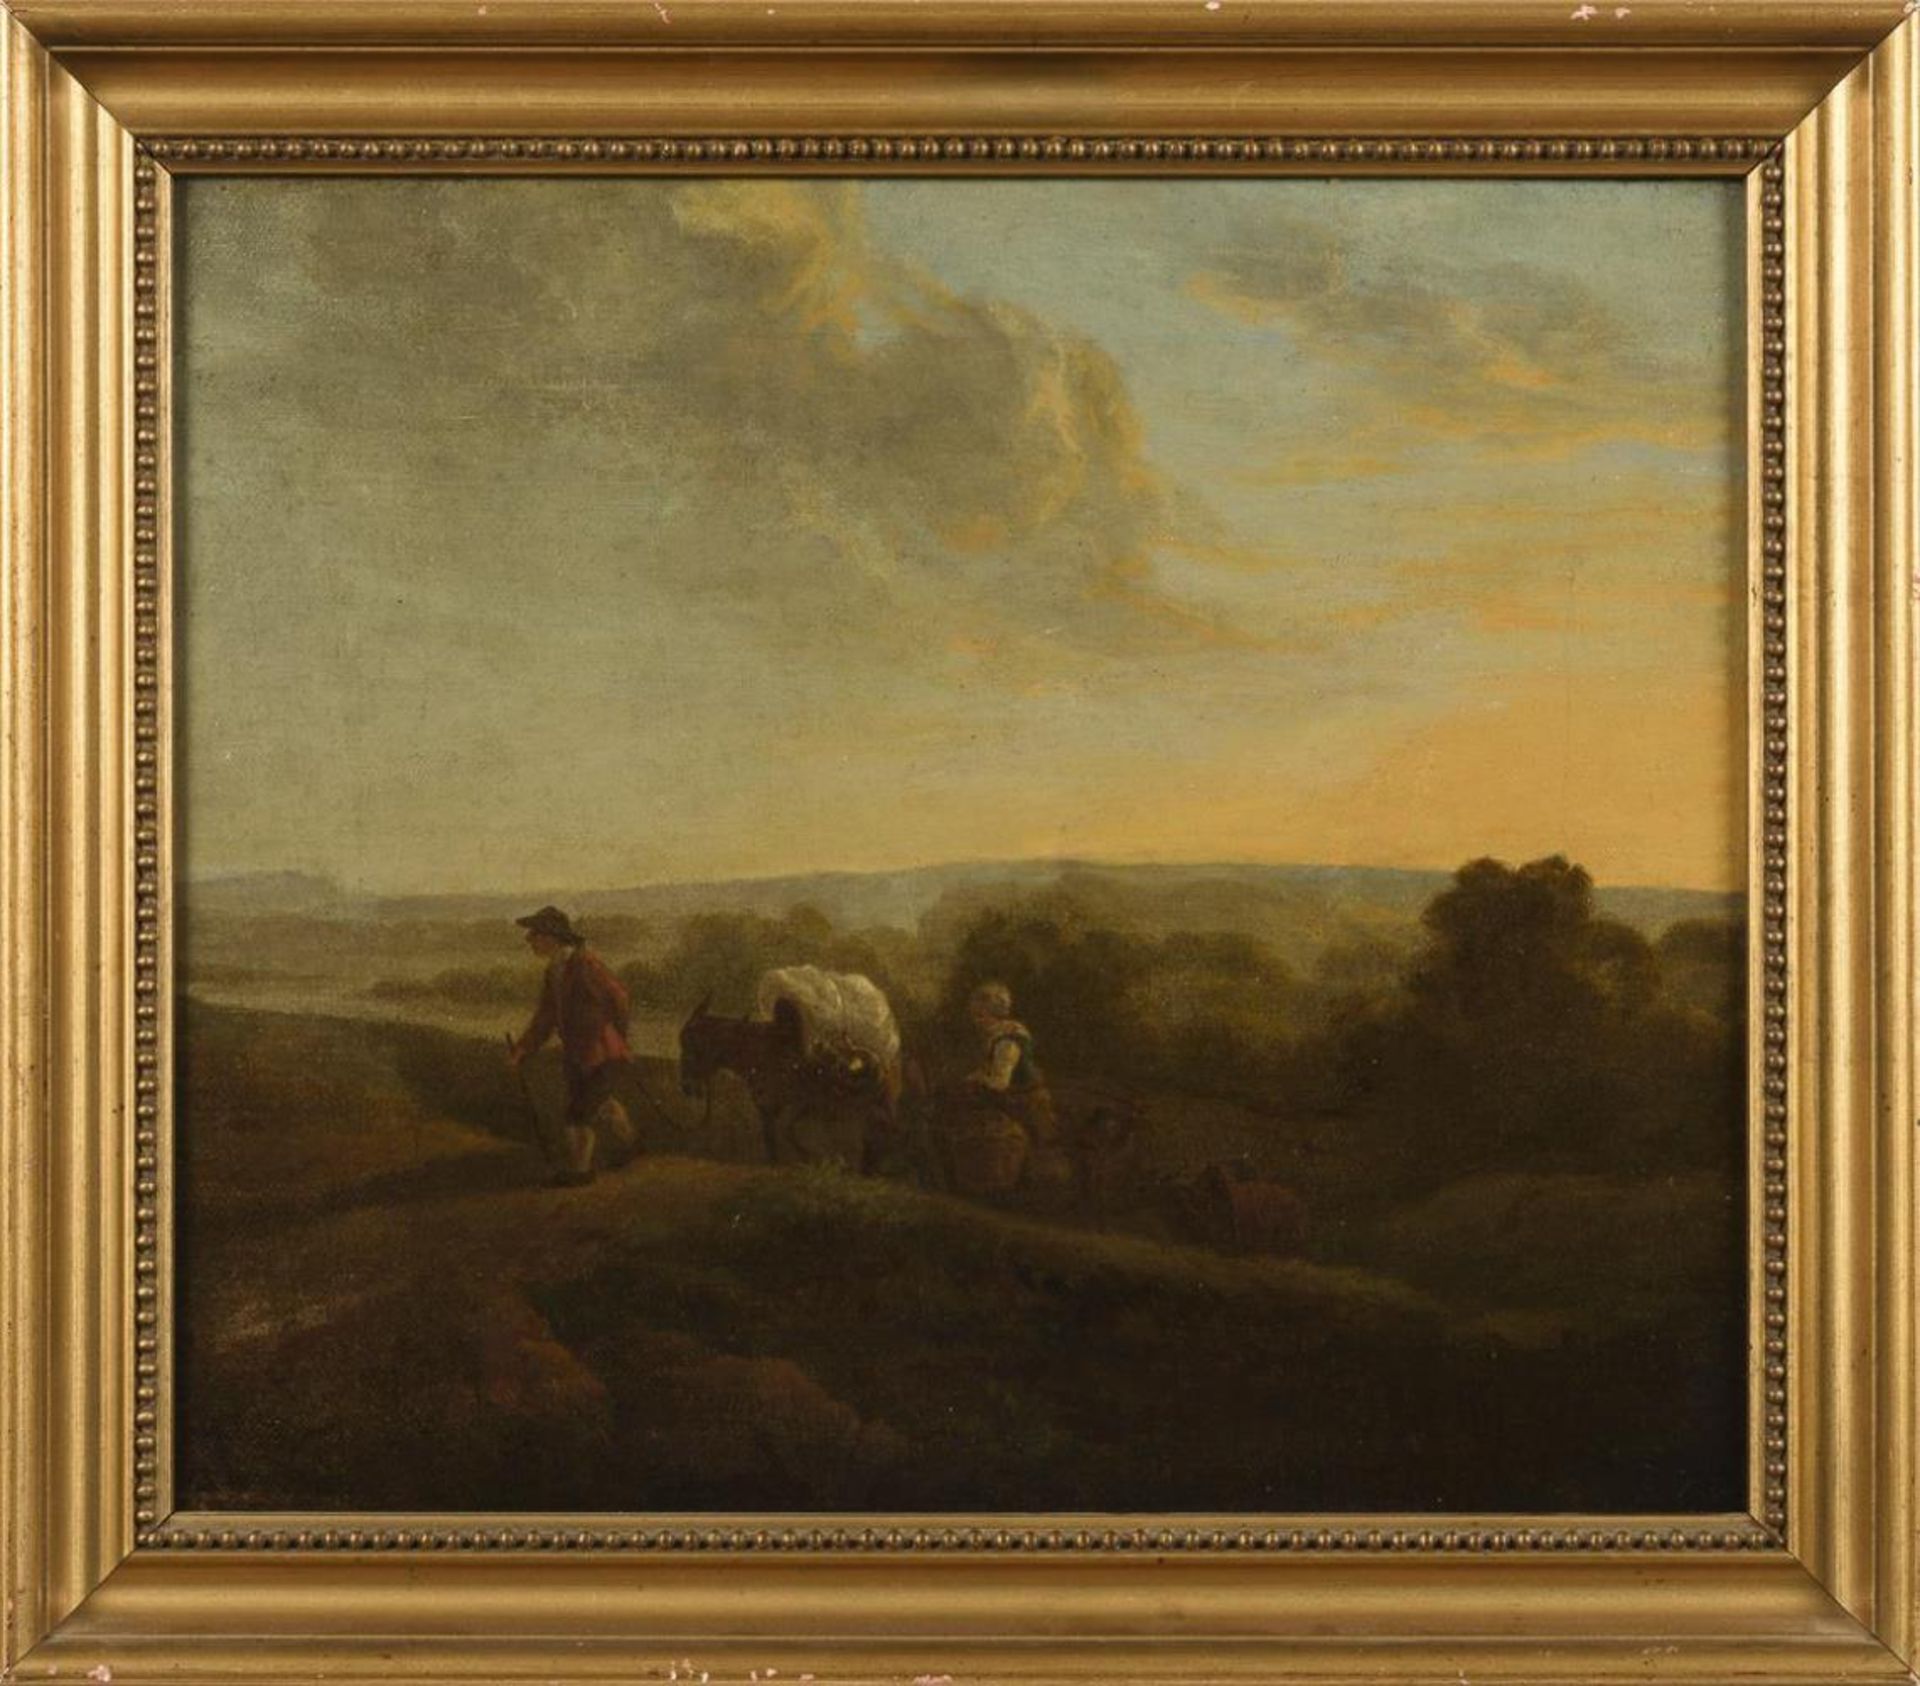 Barocker Maler: Bauernfamilie in abendlicher Landschaft - Bild 2 aus 2